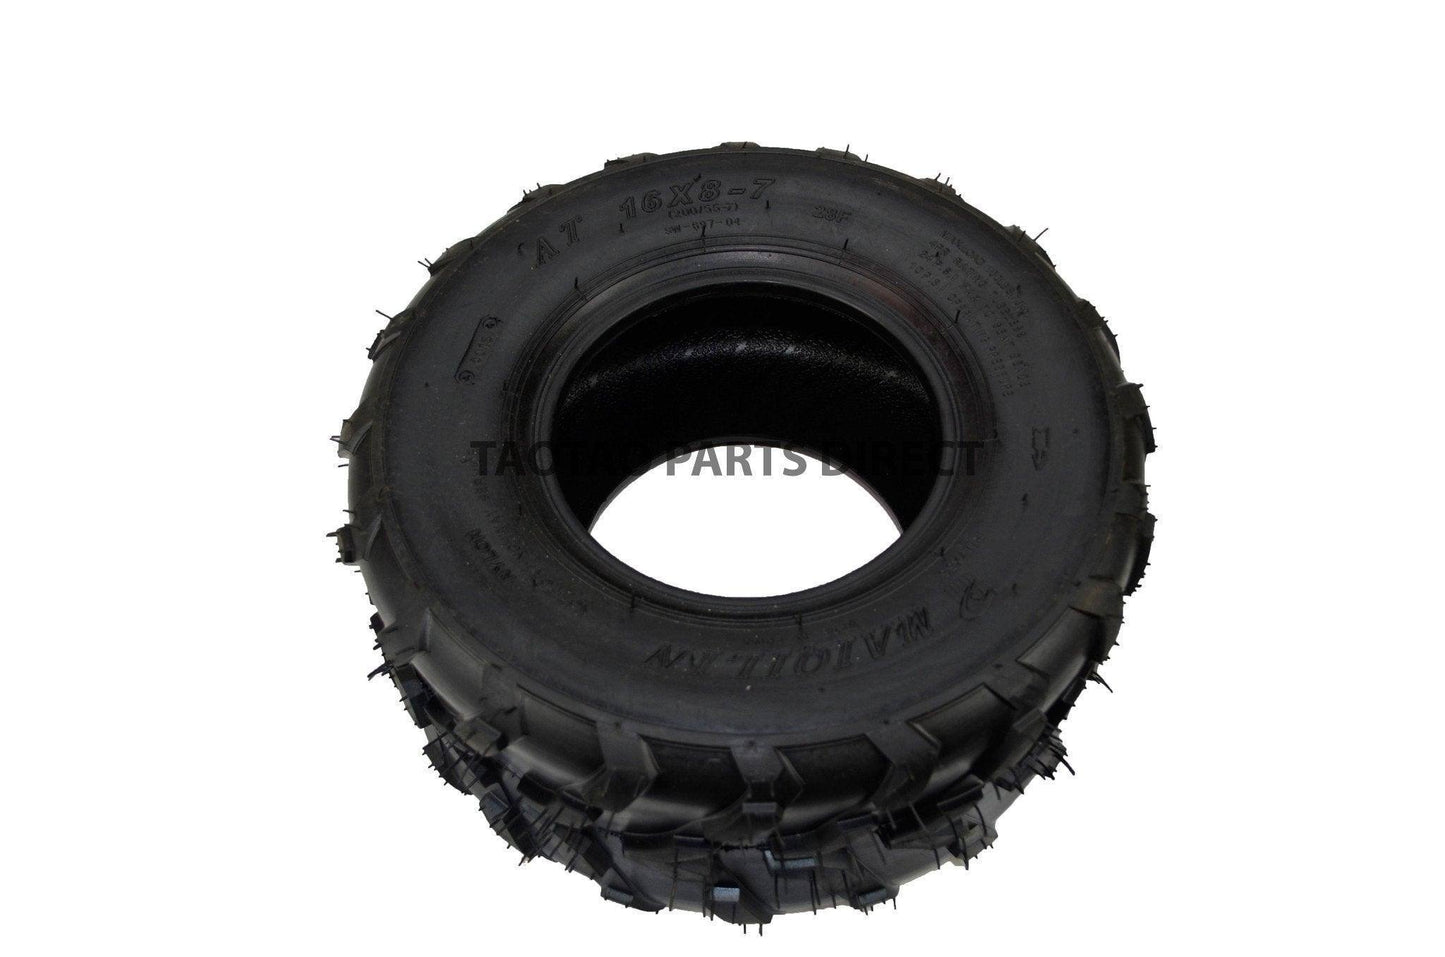 16x8-7 Tire - TaoTao Parts Direct